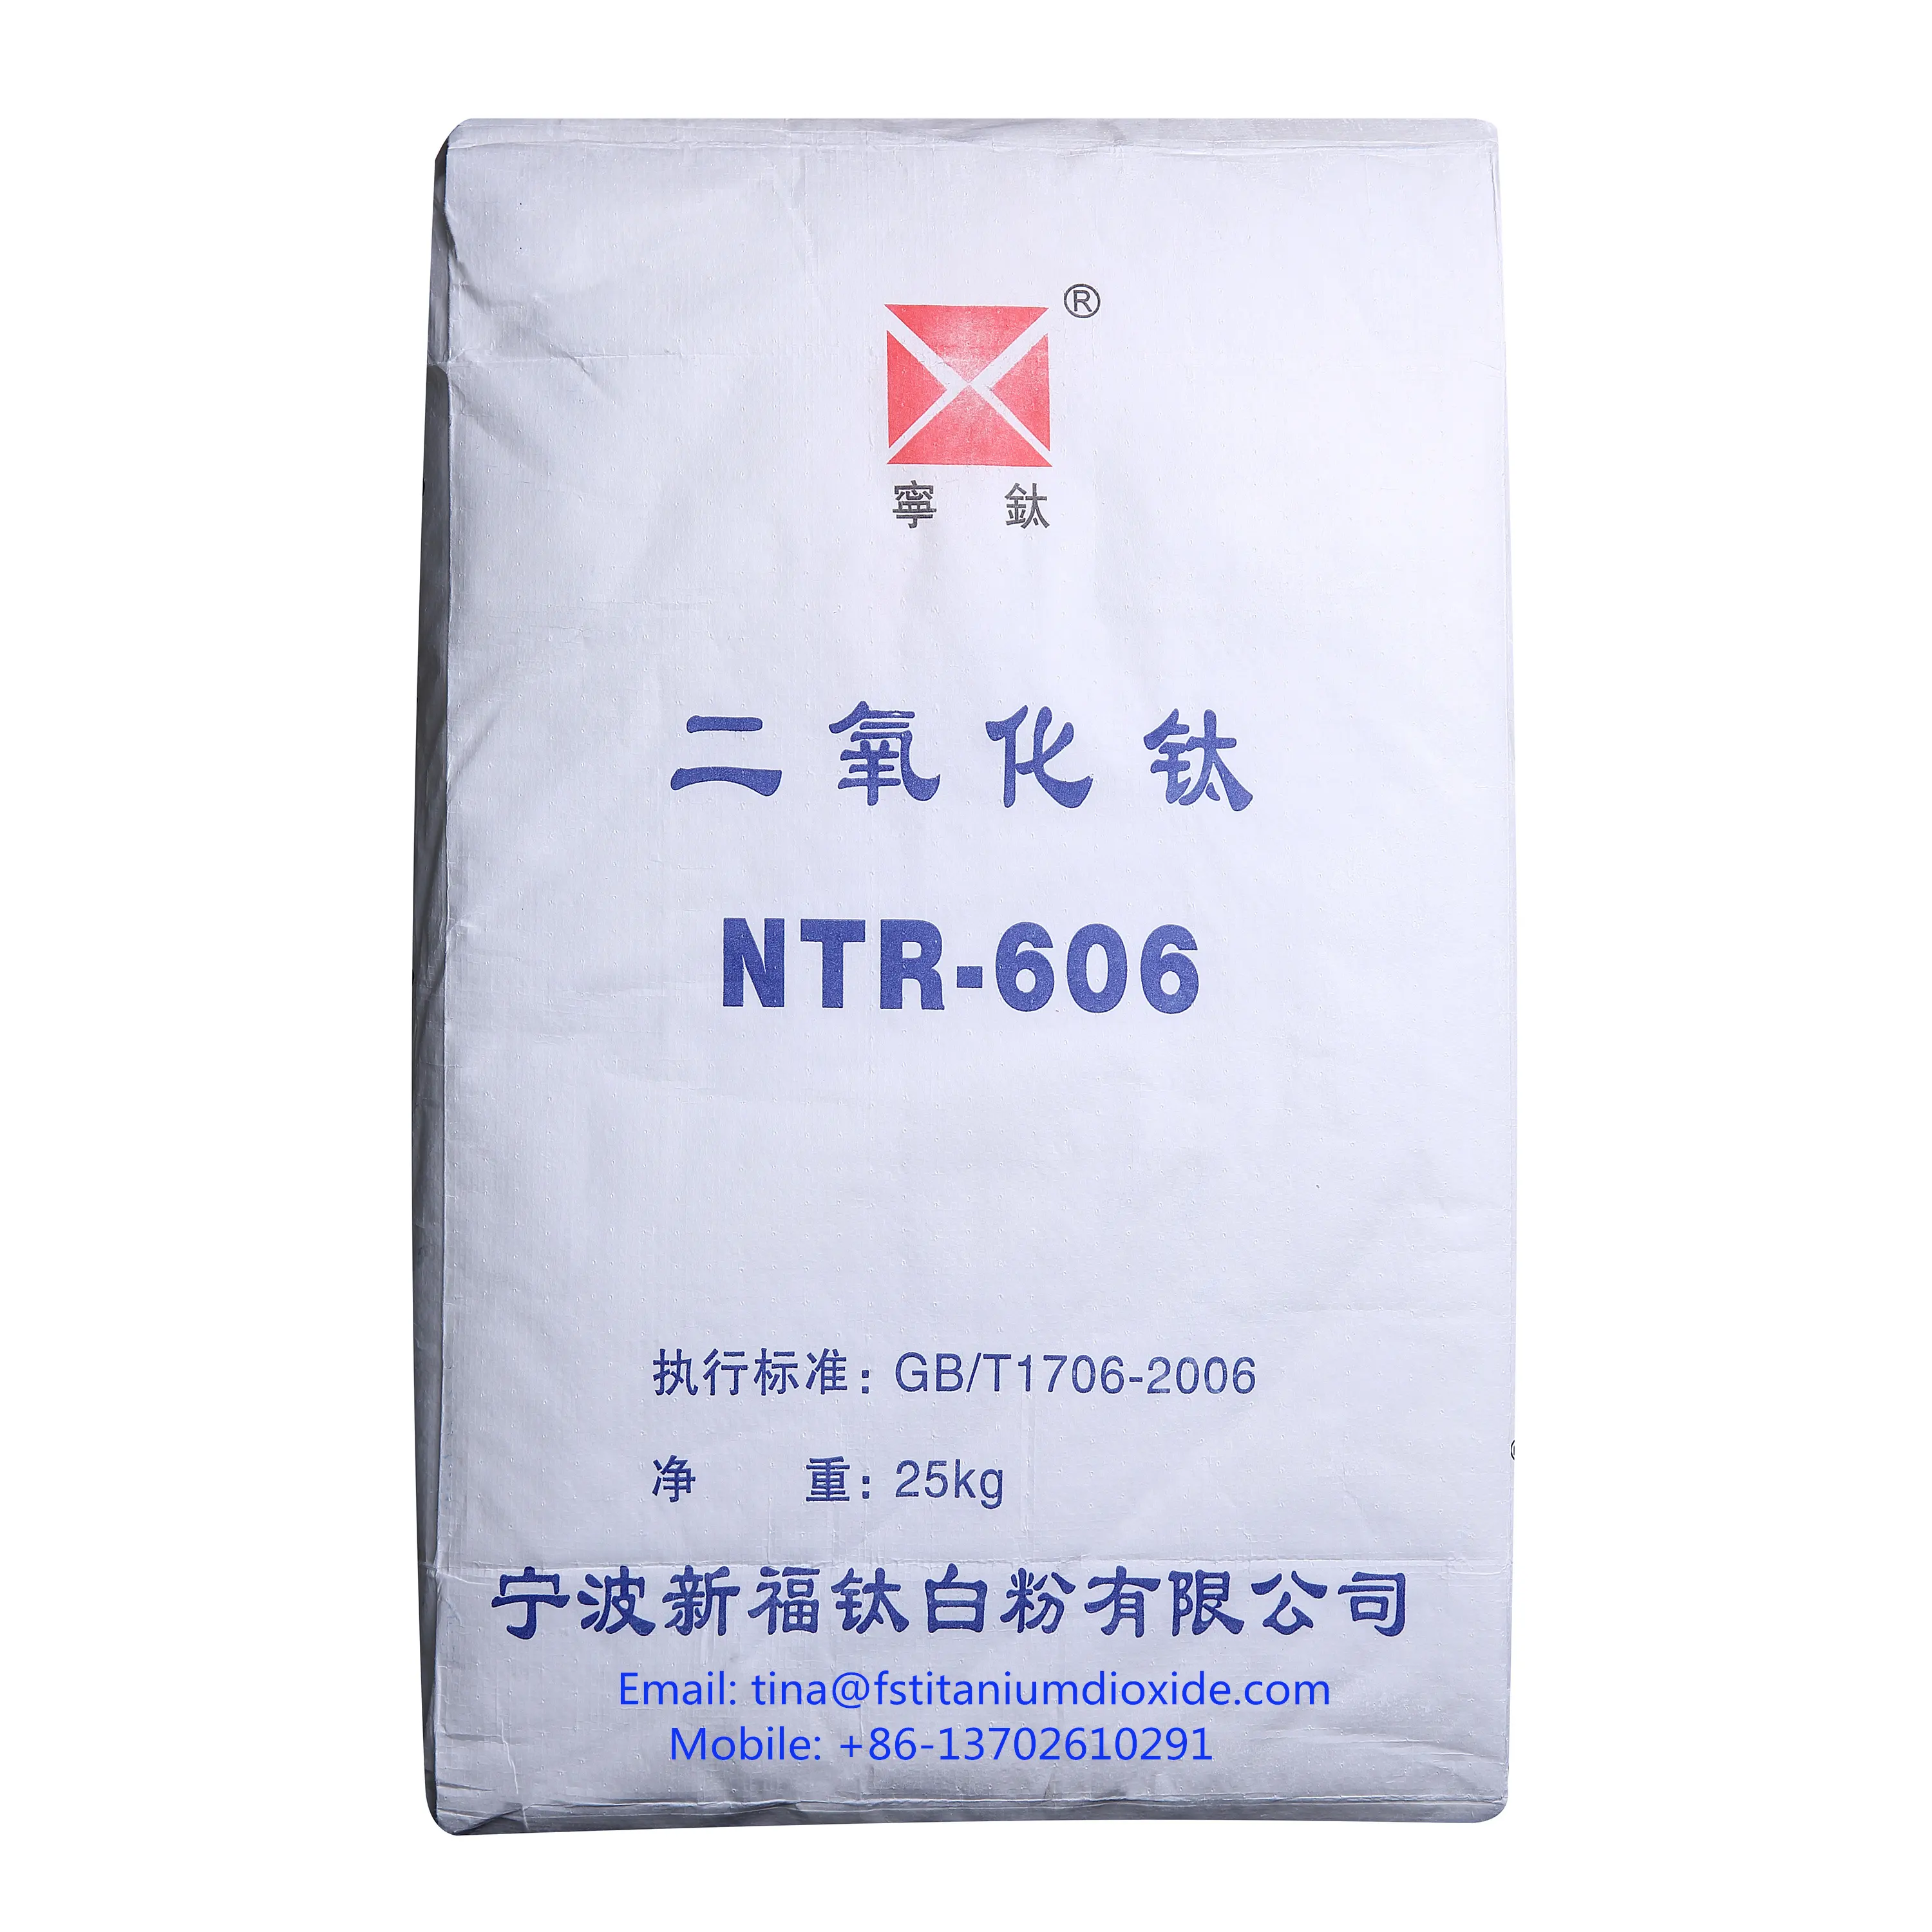 NTR-606二酸化チタンルチル、二酸化チタンルチル、二酸化チタン価格